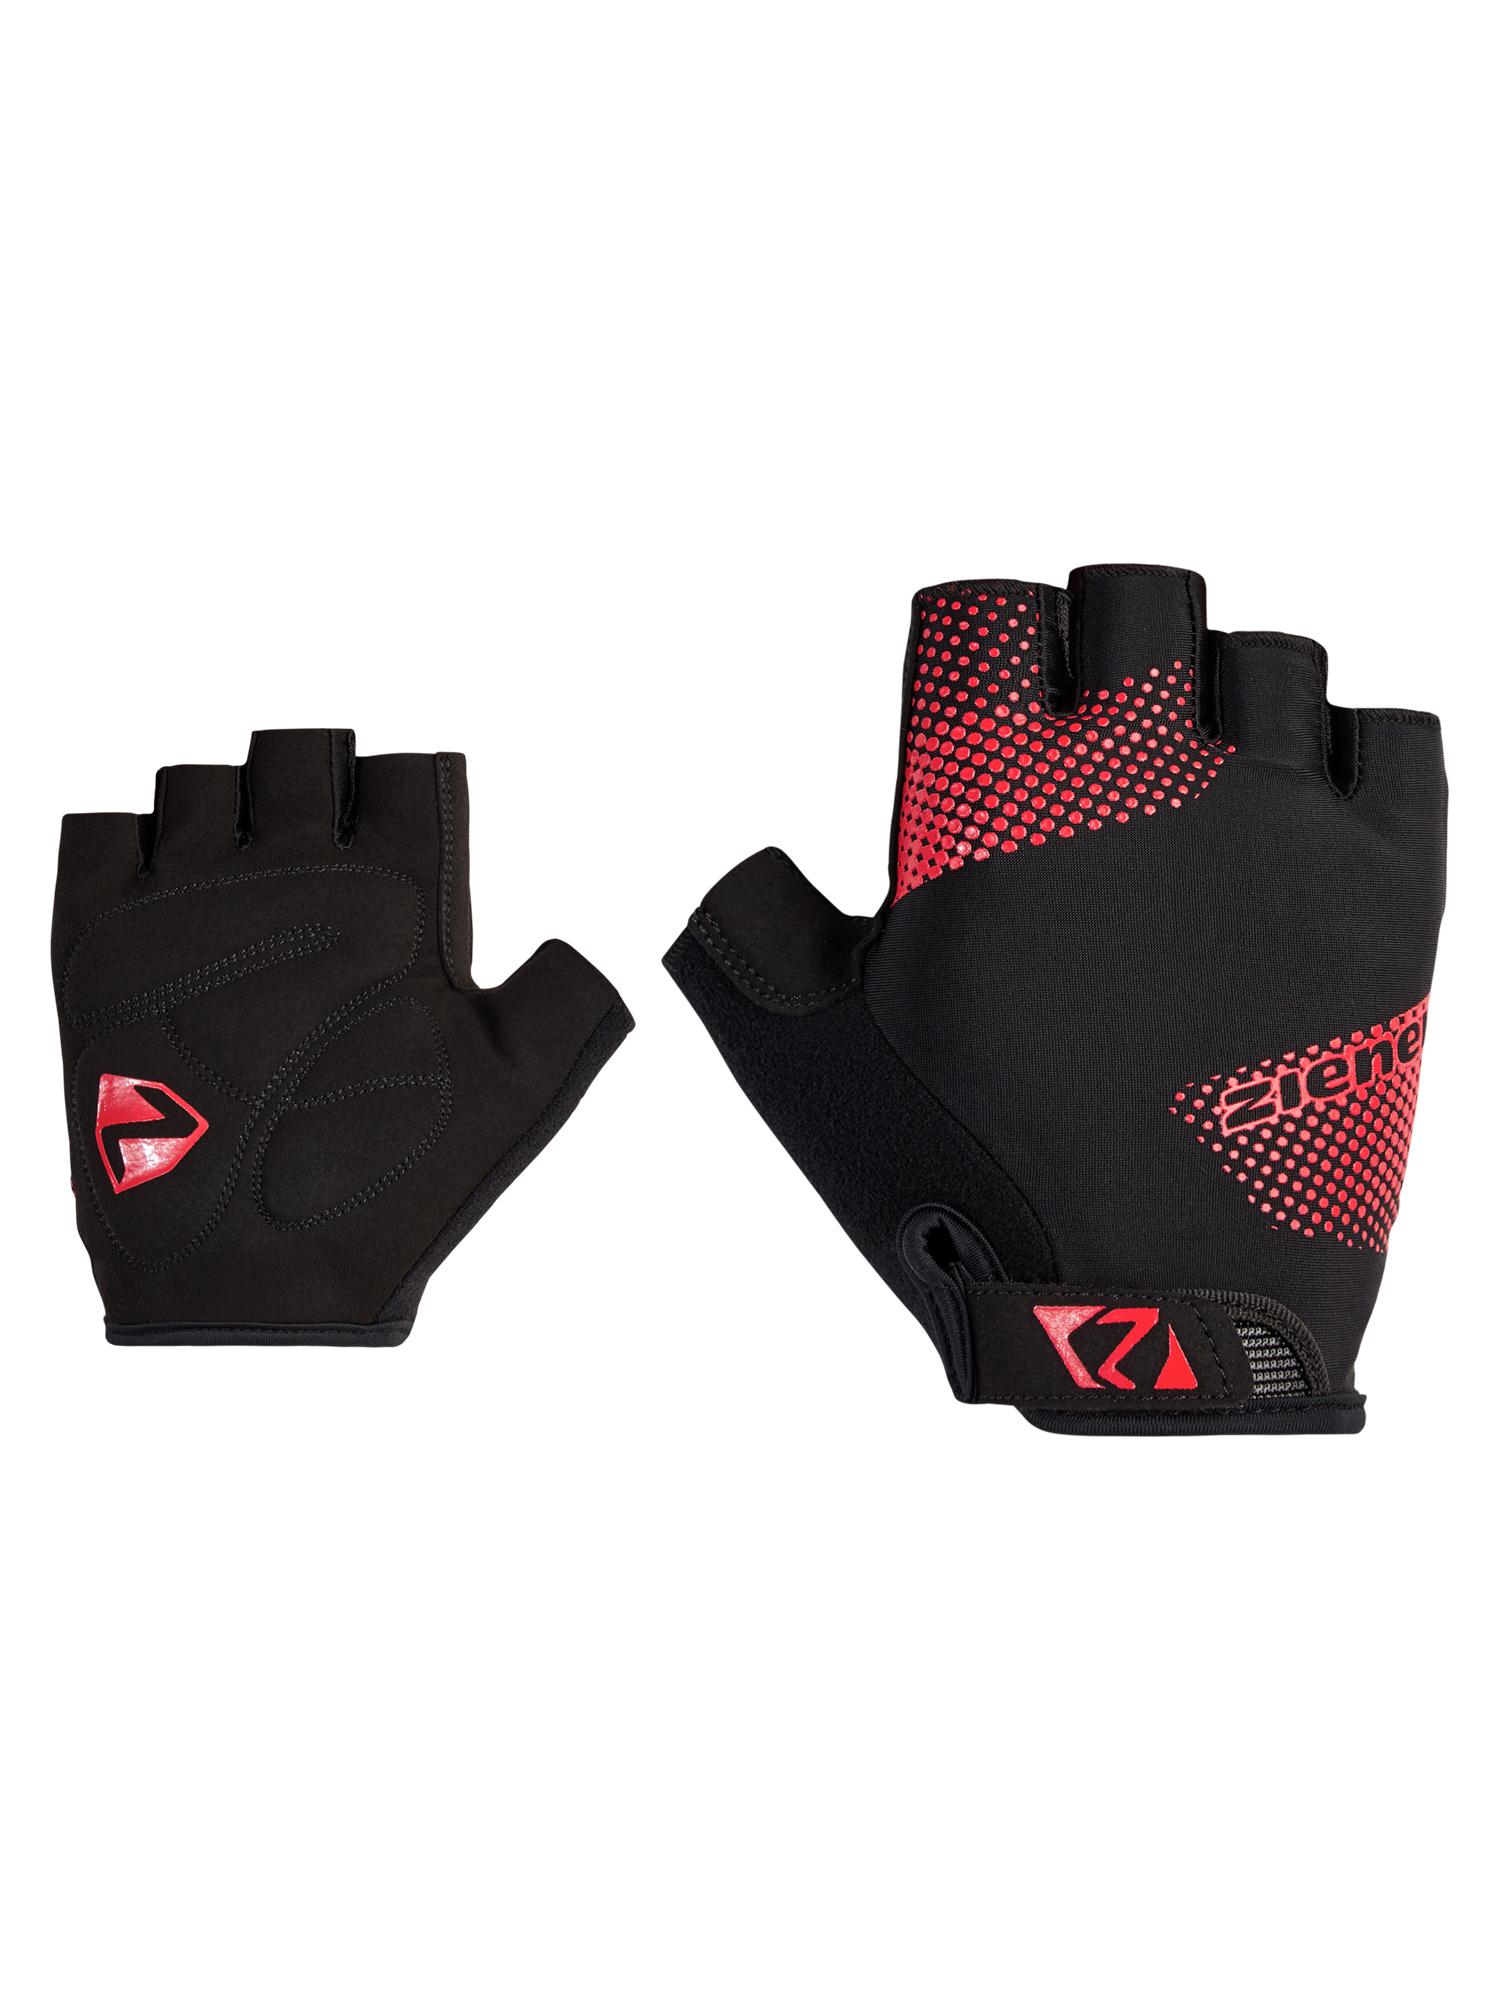 Online kaufen in im von von Fingerlose rot Ziener Shop Handschuhe Fingerlose » SportScheck Handschuhe